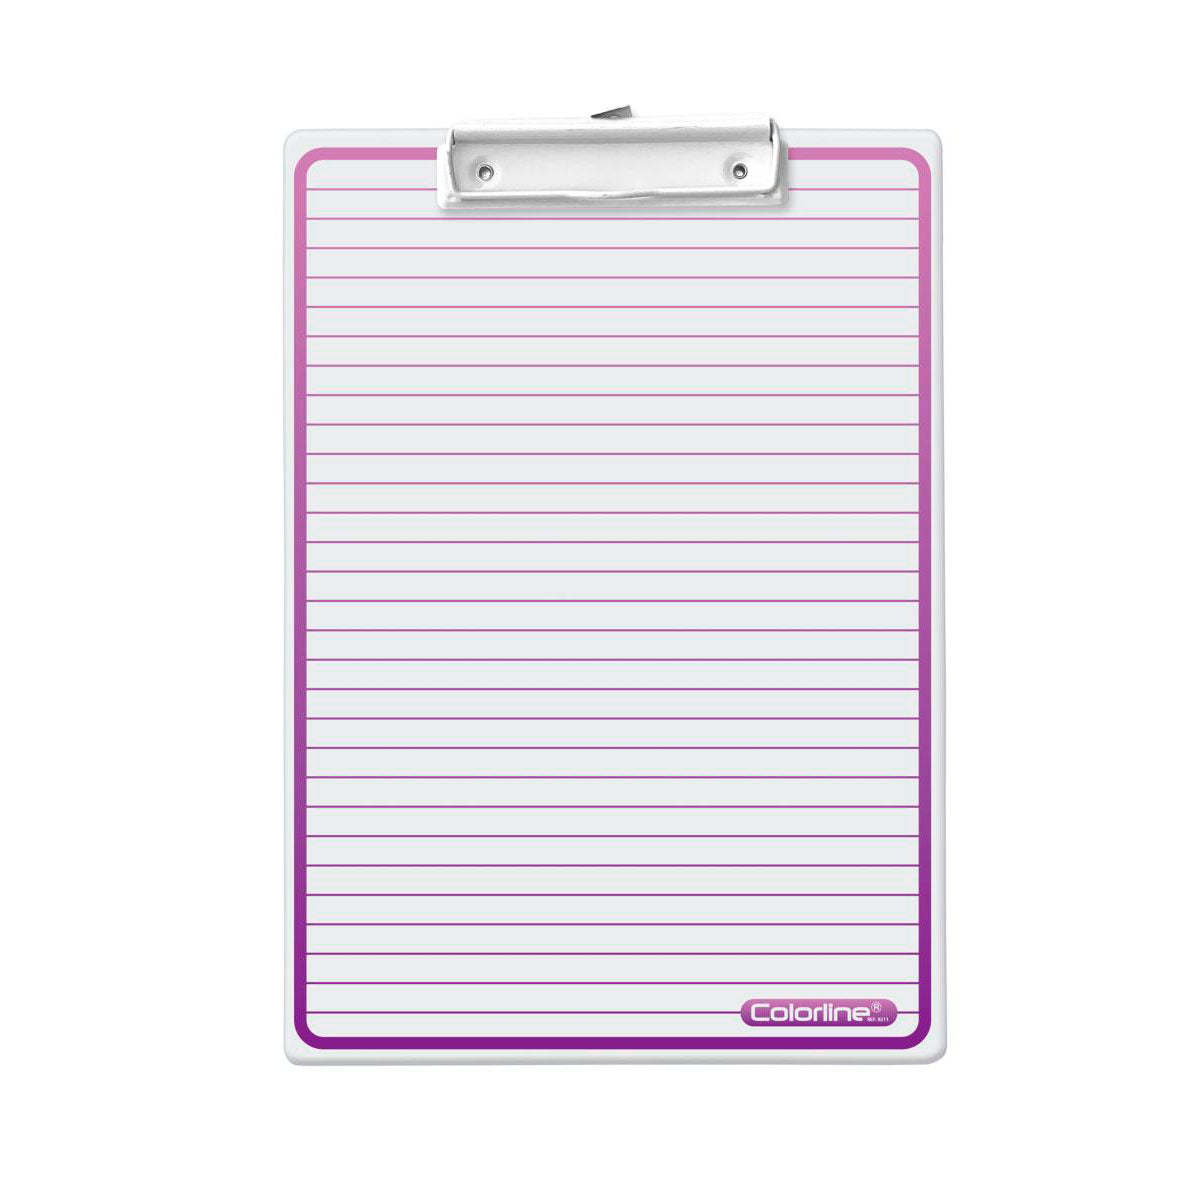 ColorLine - Soporte Porta Documentos A4+ con Pinza y Falsilla de Escritura